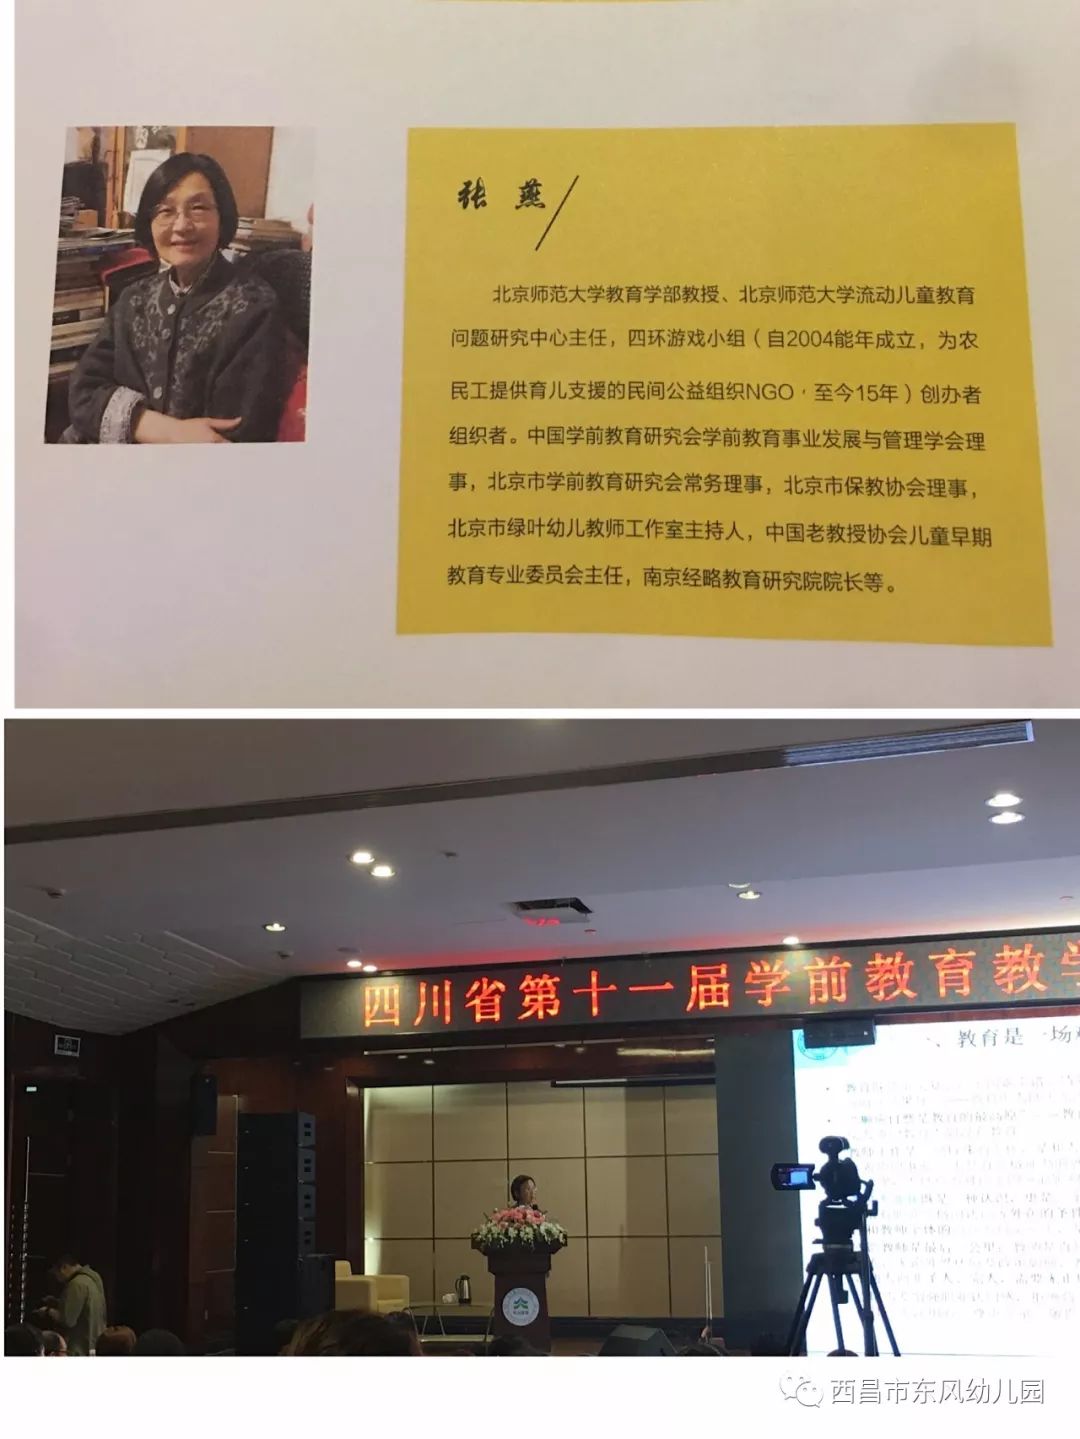 学部儿童教育学科教授刘乡英女士,北京师范大学教育学部教授张燕女士